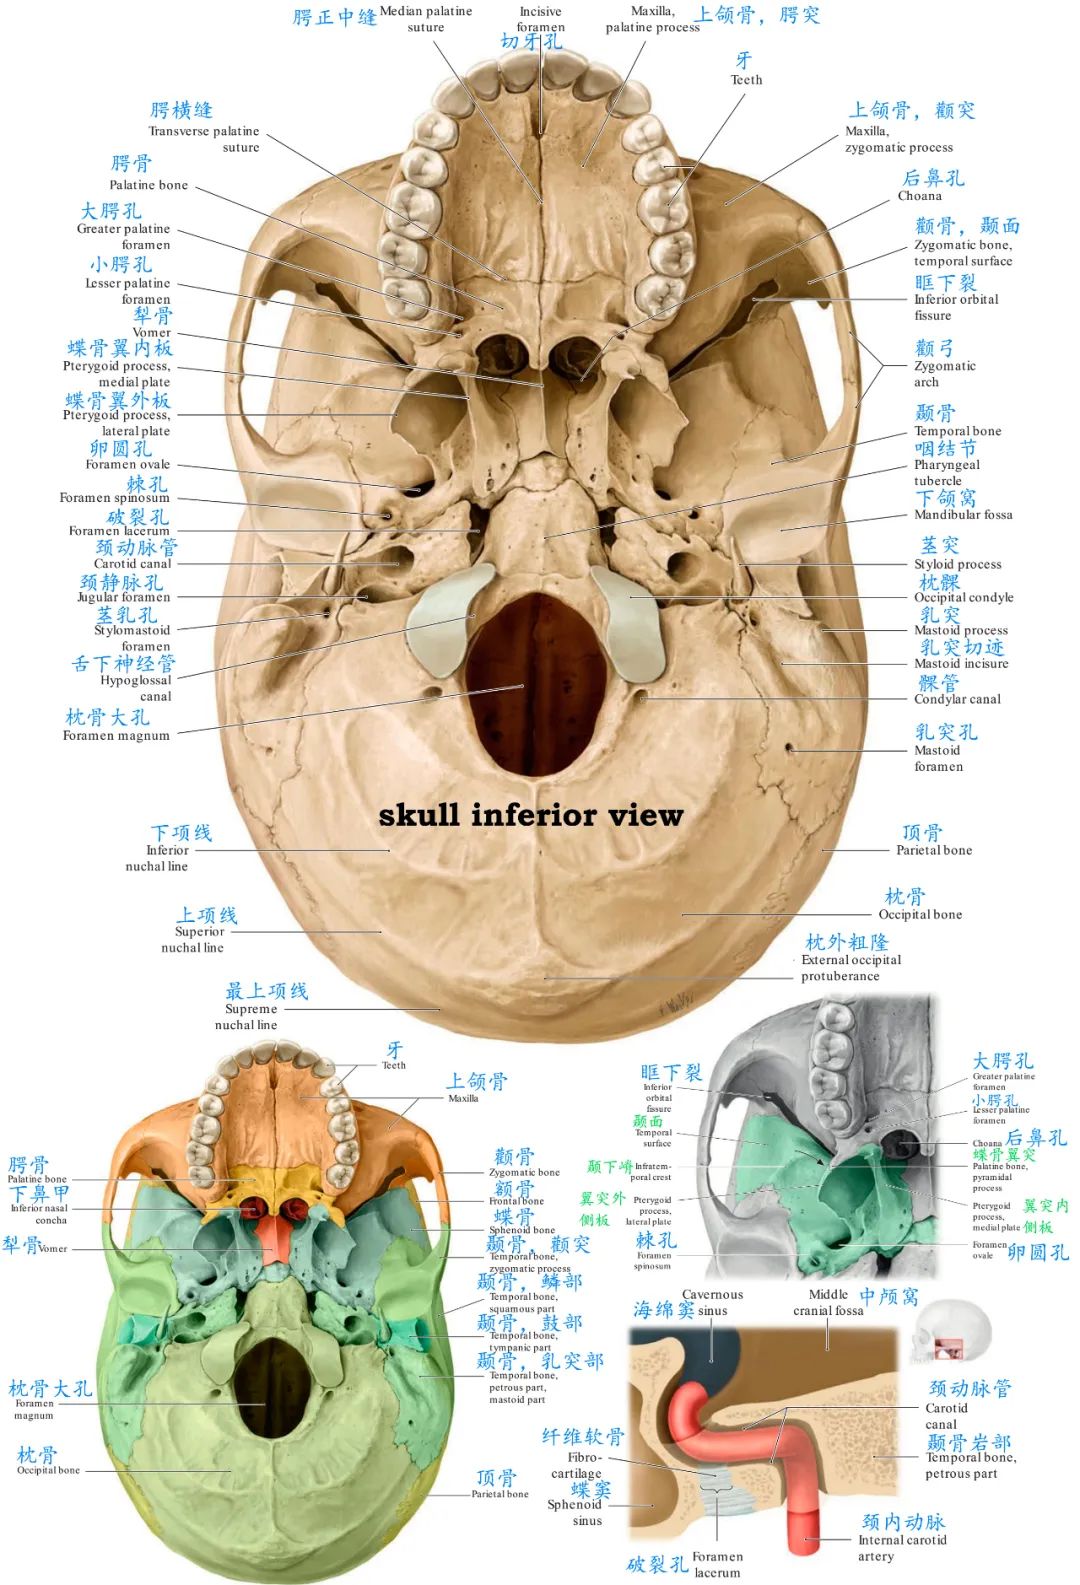 看颅部外表面解剖:2,颅骨重要解剖标志:1,所有脑颅骨如何组成颅腔的